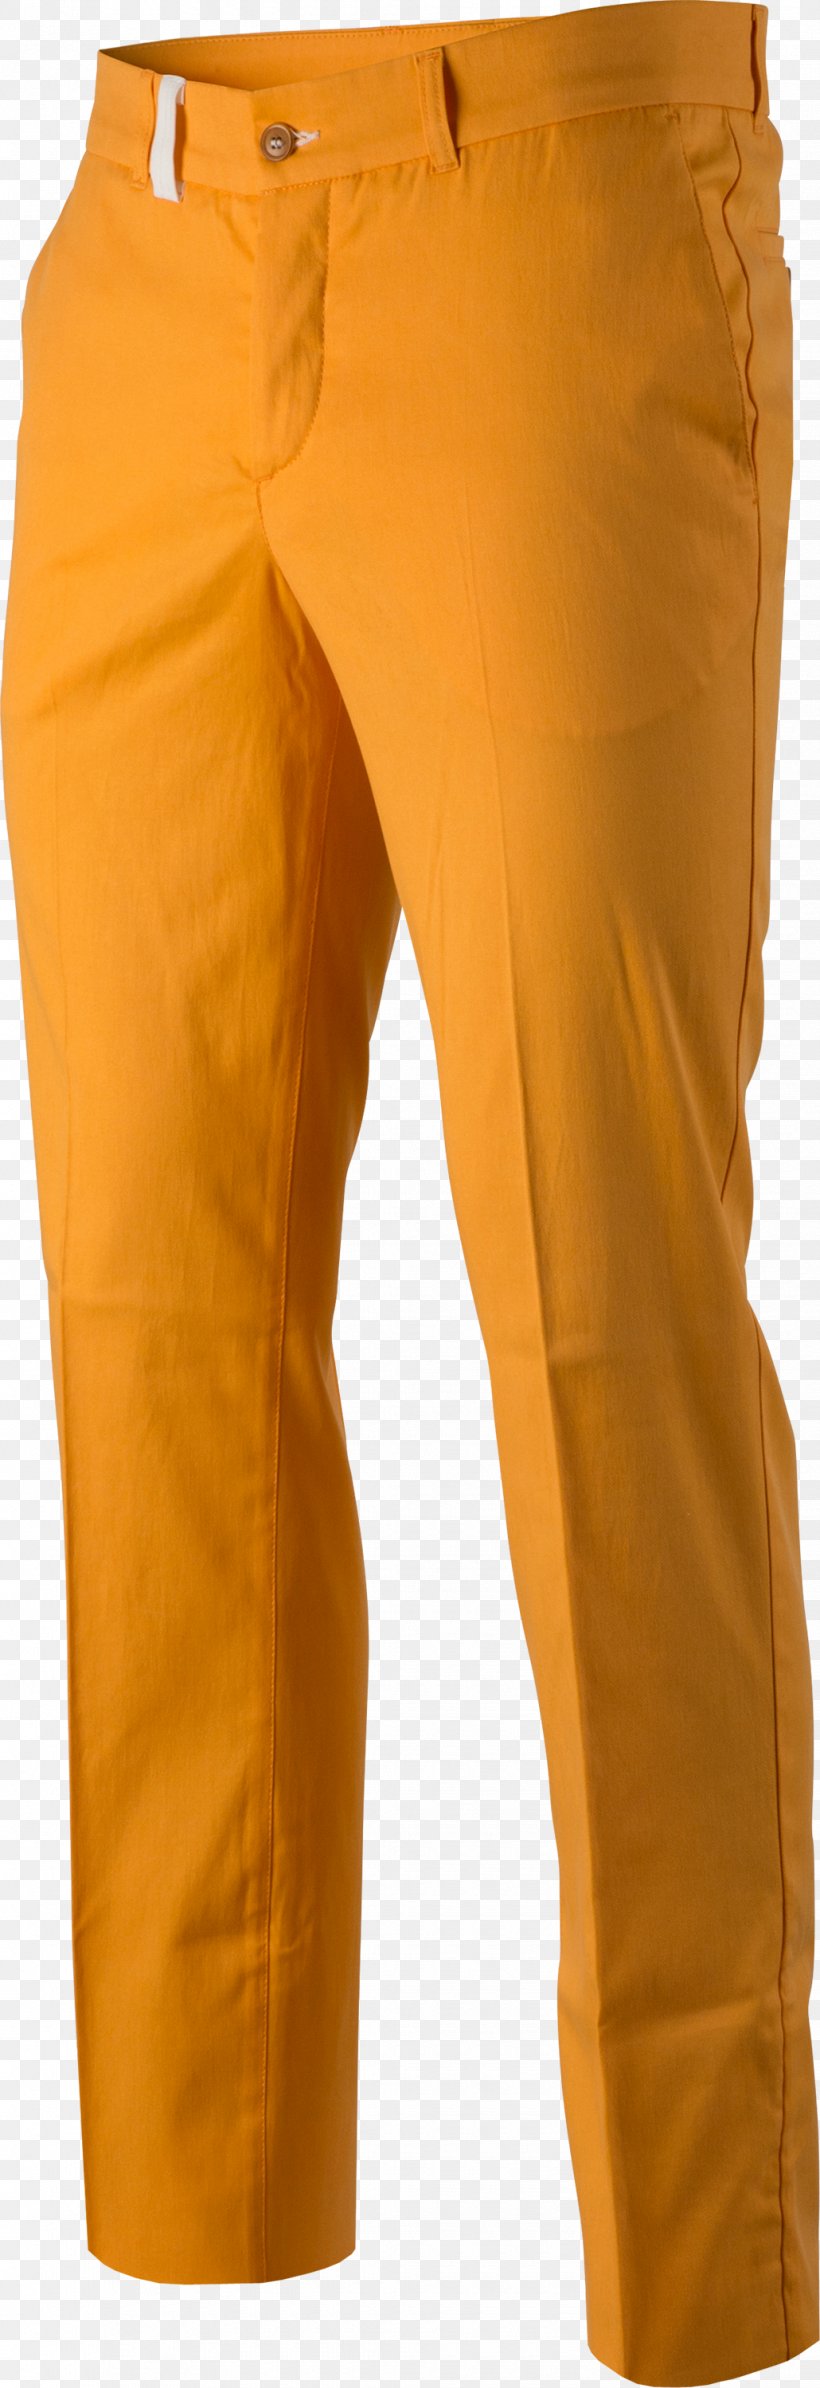 Pants Yellow Khaki Jeans, PNG, 1030x3000px, Pants, Active Pants, Jeans, Khaki, Orange Download Free